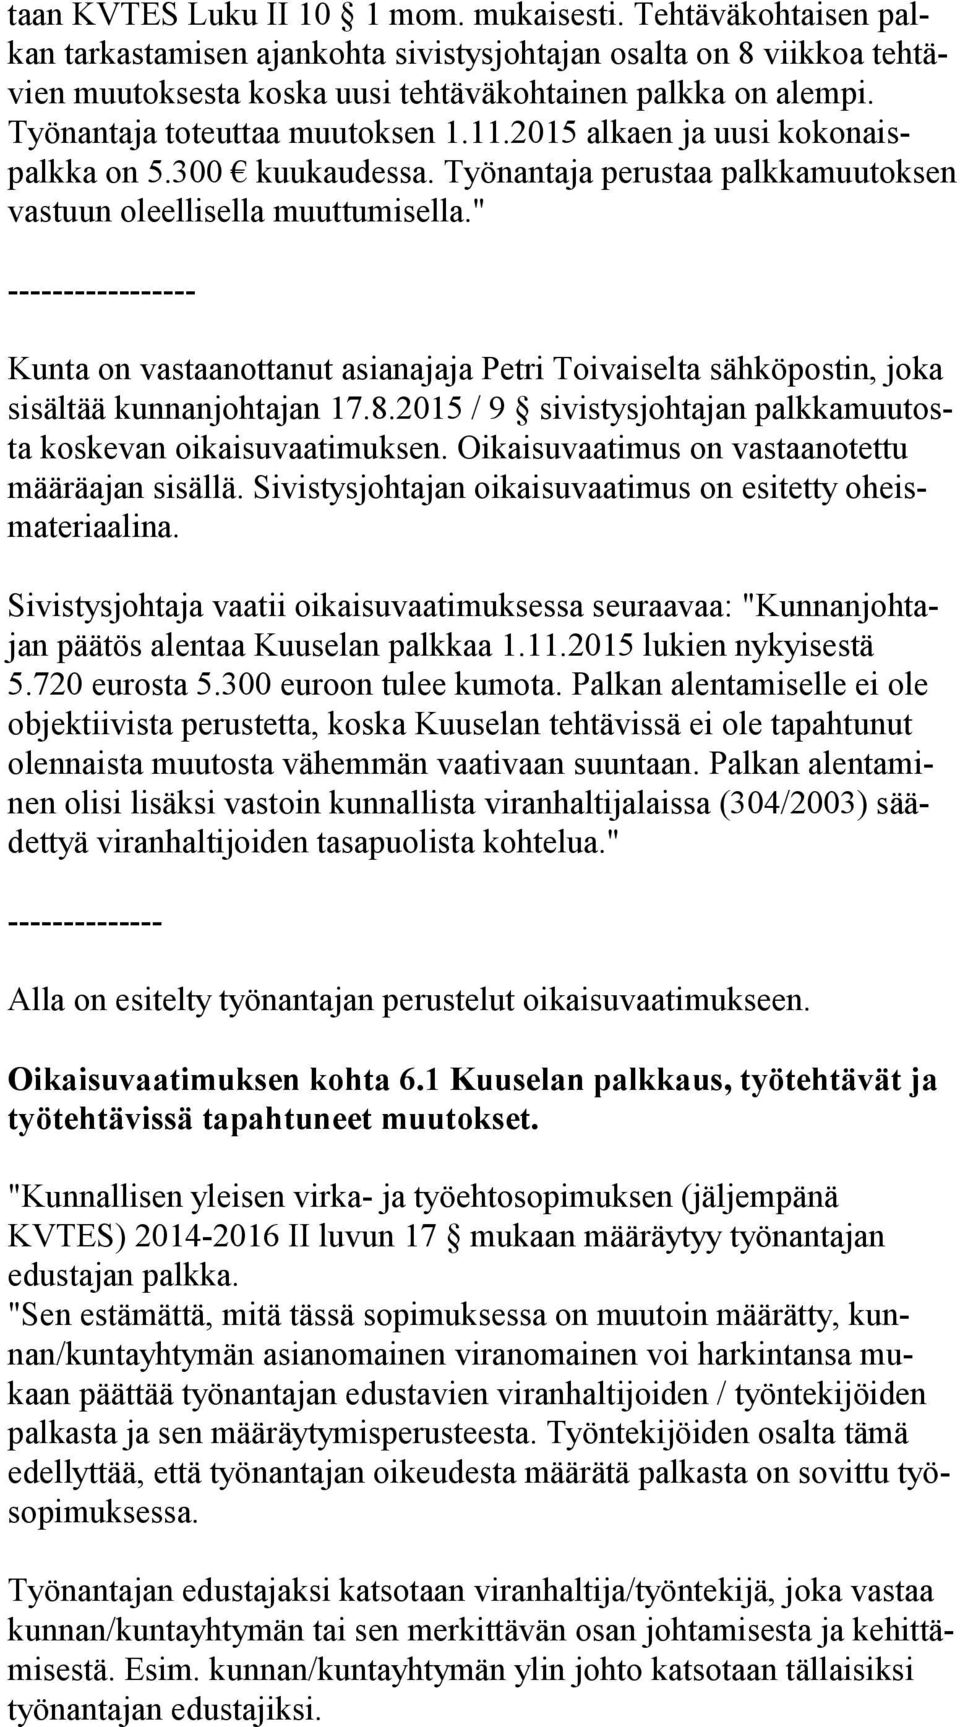 " ----------------- Kunta on vastaanottanut asianajaja Petri Toivaiselta sähköpostin, joka si säl tää kunnanjohtajan 17.8.2015 / 9 sivistysjohtajan palk ka muu tosta koskevan oikaisuvaatimuksen.